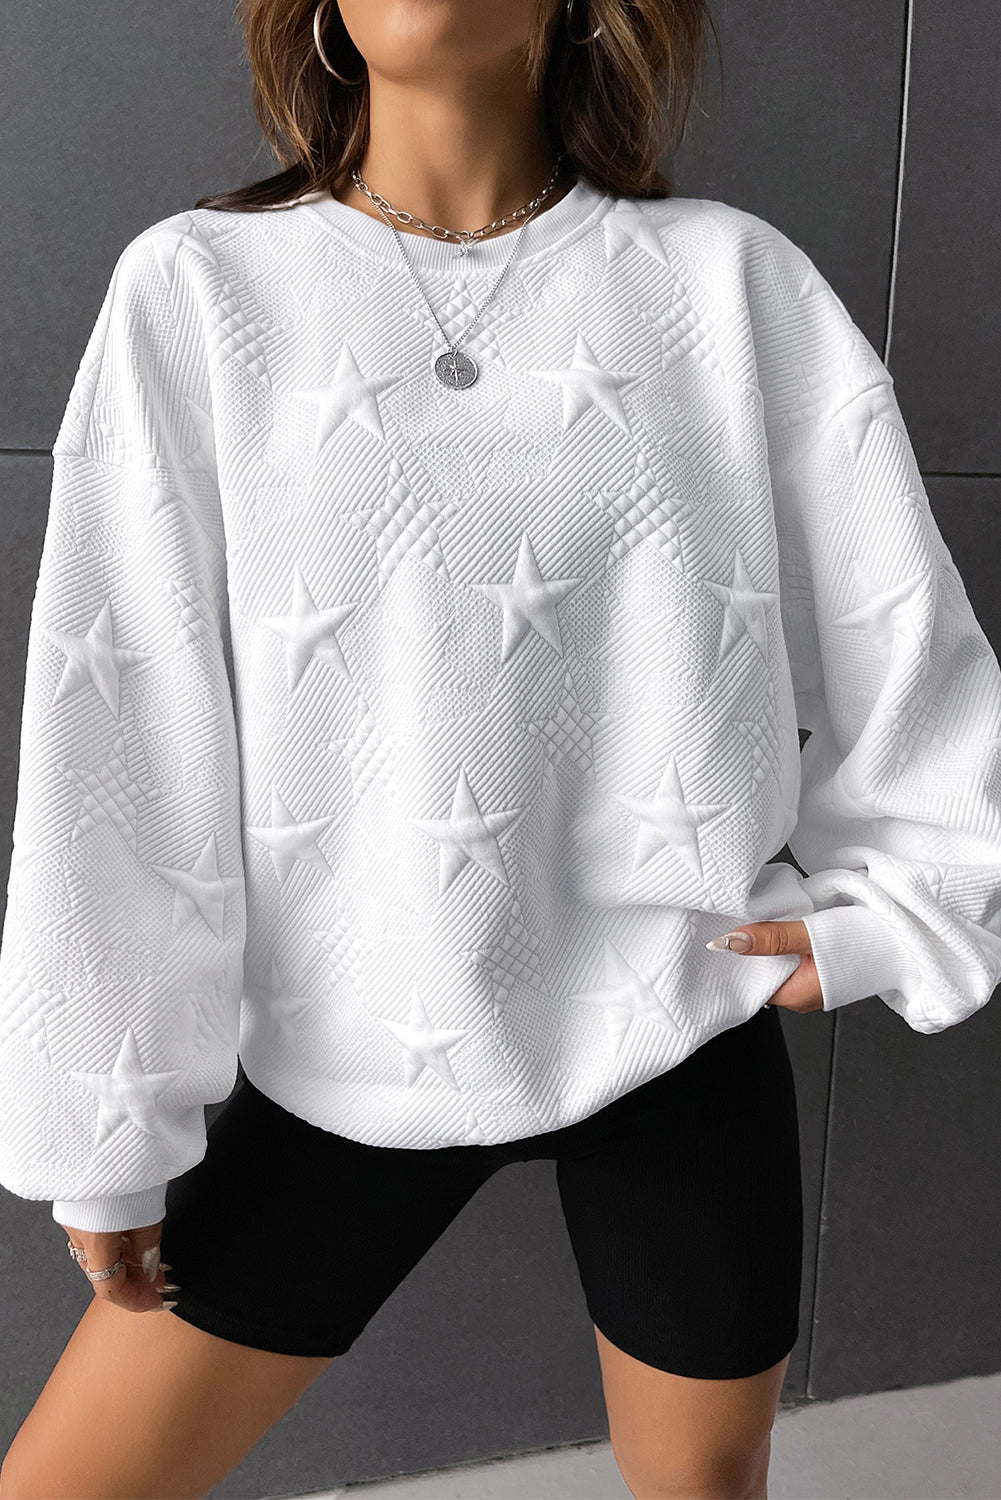 Black star embossed textured drop shoulder sweatshirt - white / l / 95% polyester + 5% elastane - sweatshirts & hoodies